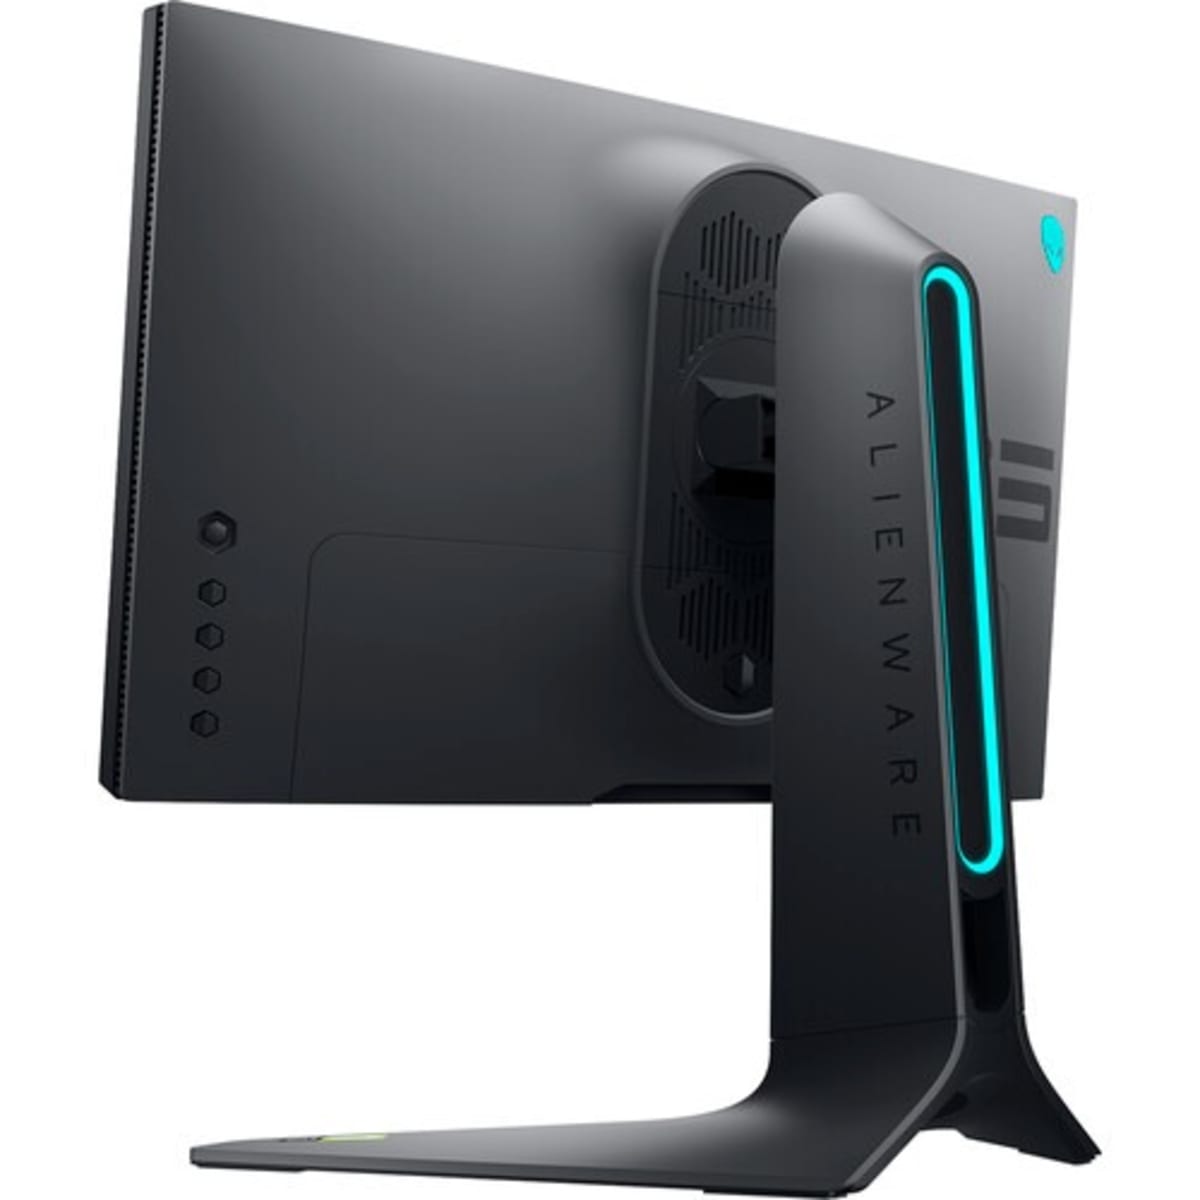 Alienware anuncia monitores gamer de 25 e 27 polegadas, com taxa de até 360  Hz 